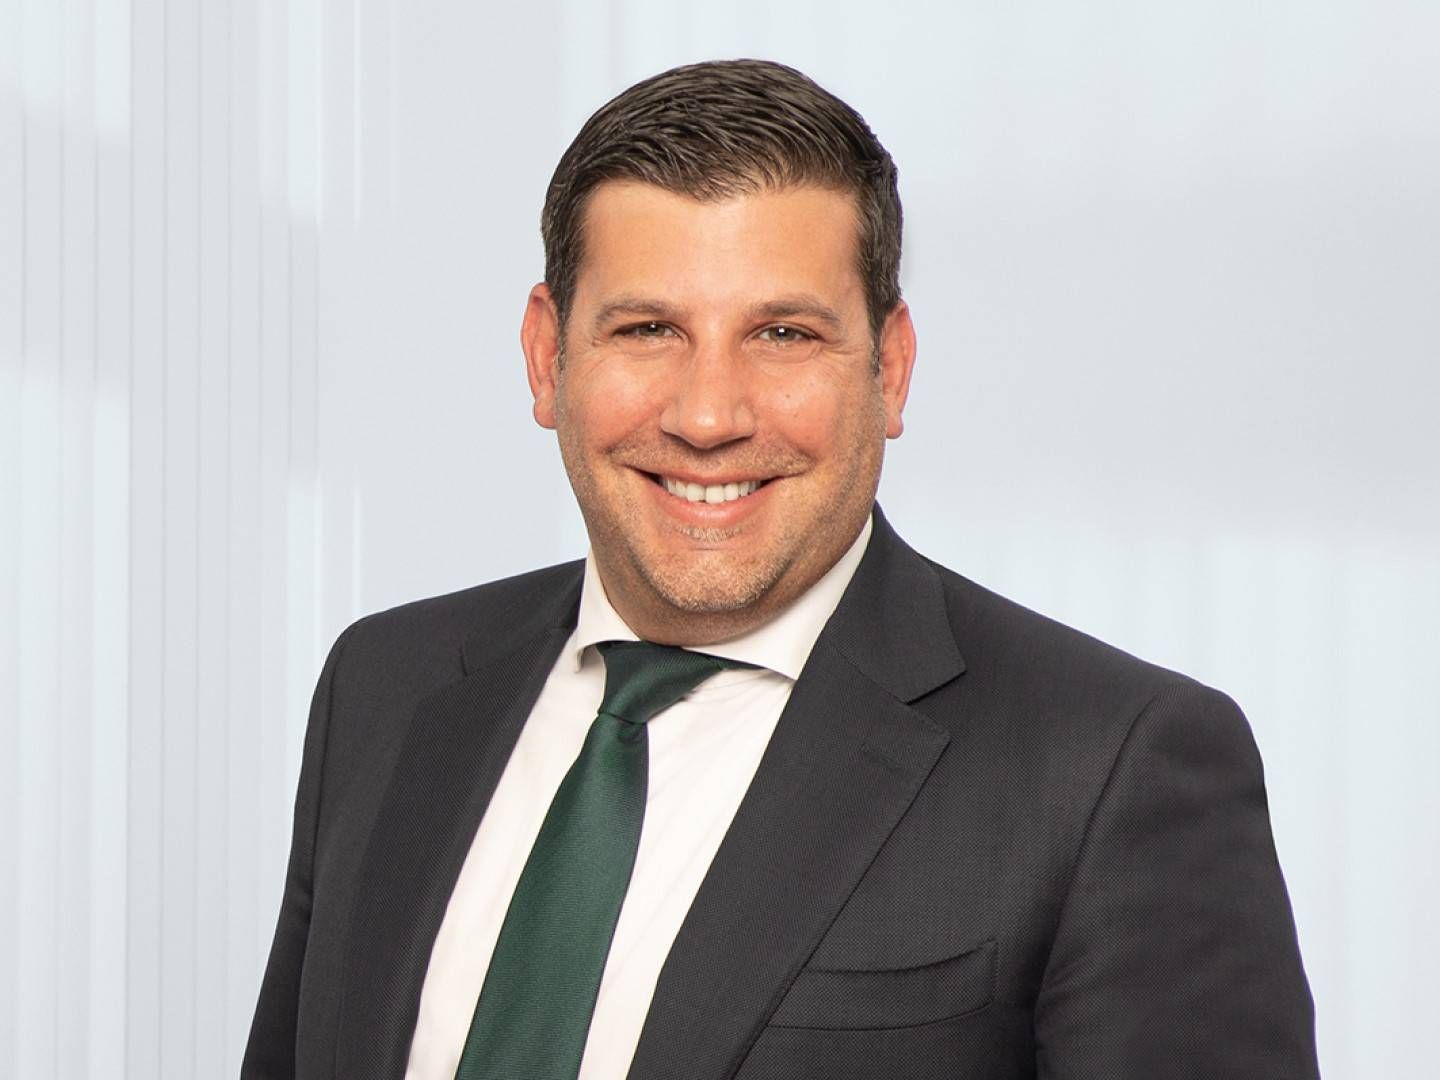 Mario Mattera, künftig verantwortlich für den Bereich "Digital Assets" beim Bankhaus Metzler